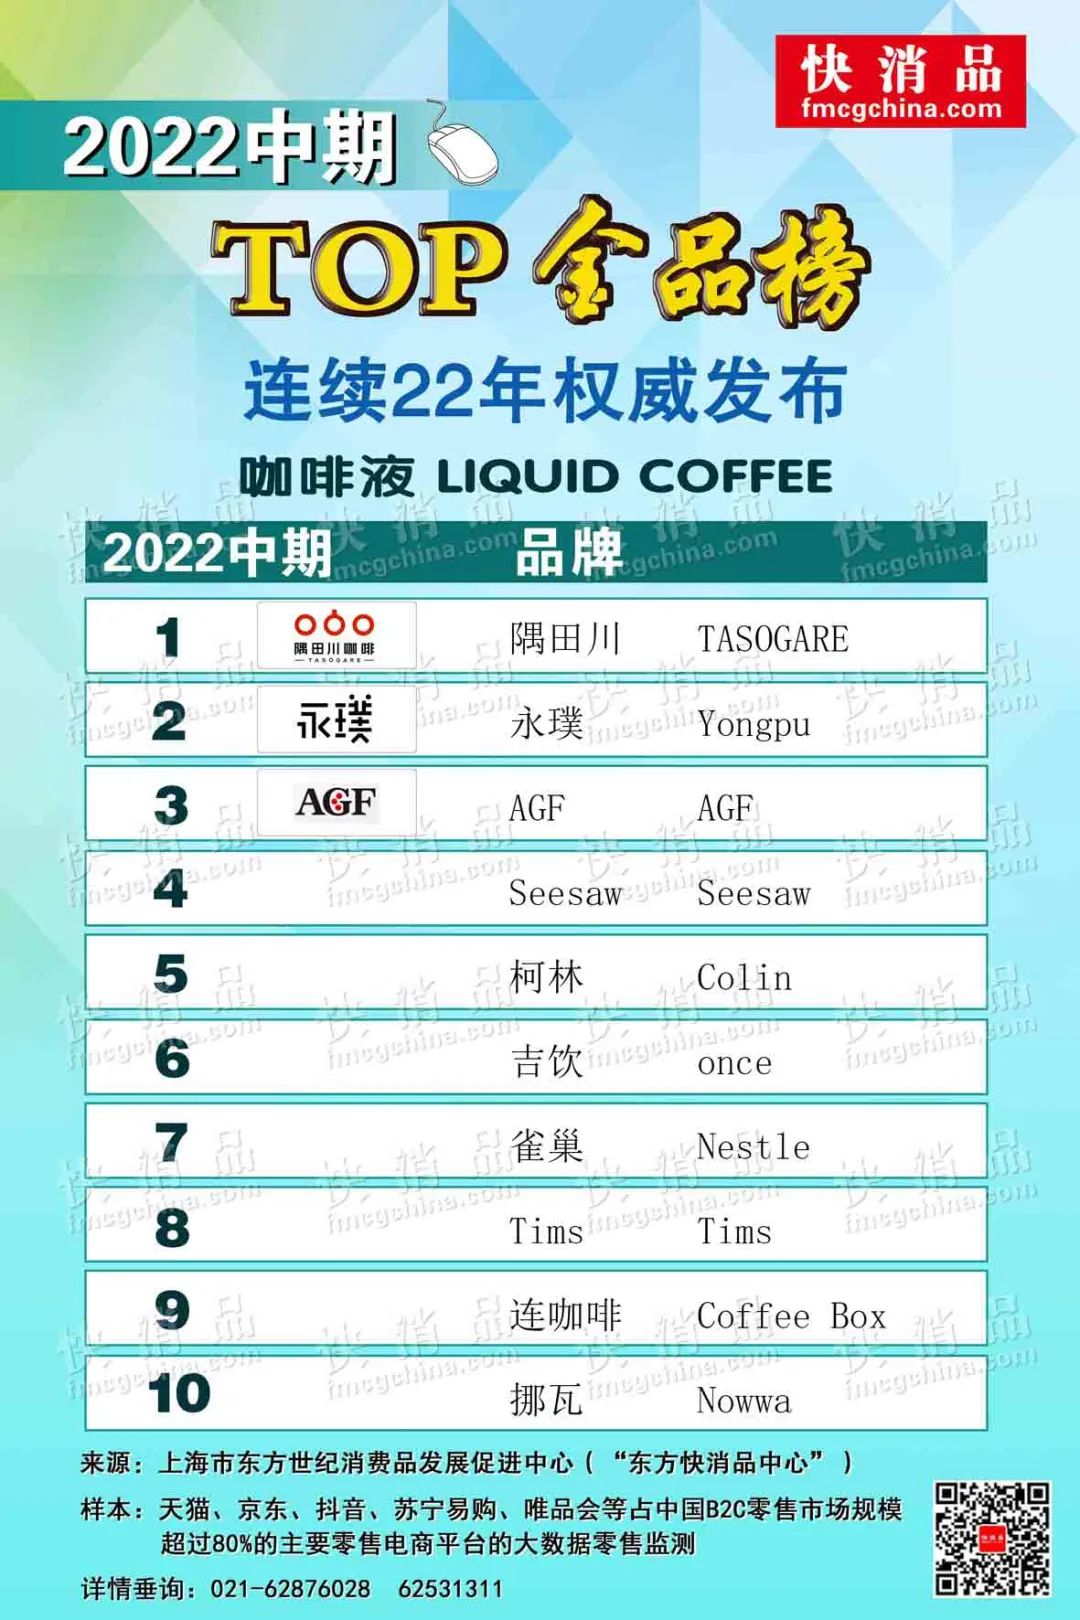 「独家」2022中期线上饮品TOP金品榜—燕麦奶、冷饮、咖啡液公布